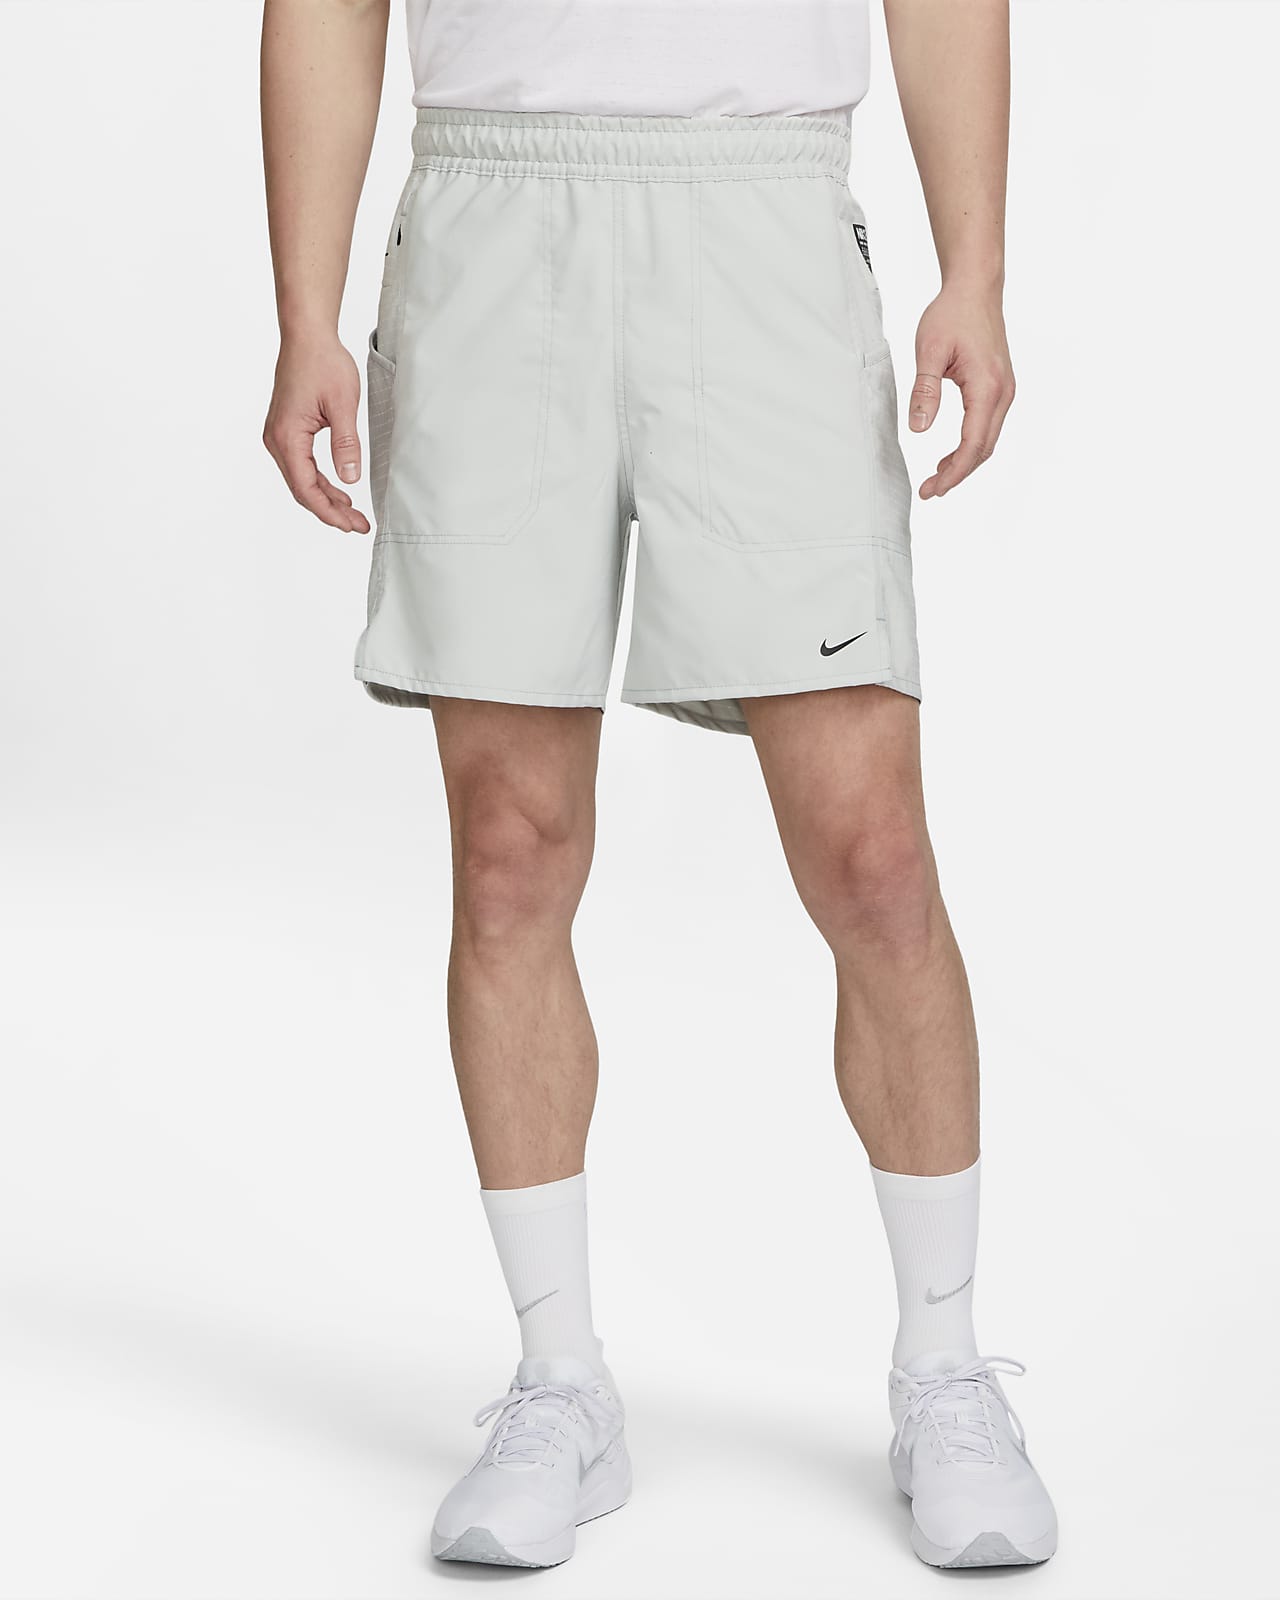 46 Basketball shorts design ideas  basketball shorts, mens outfits, shorts